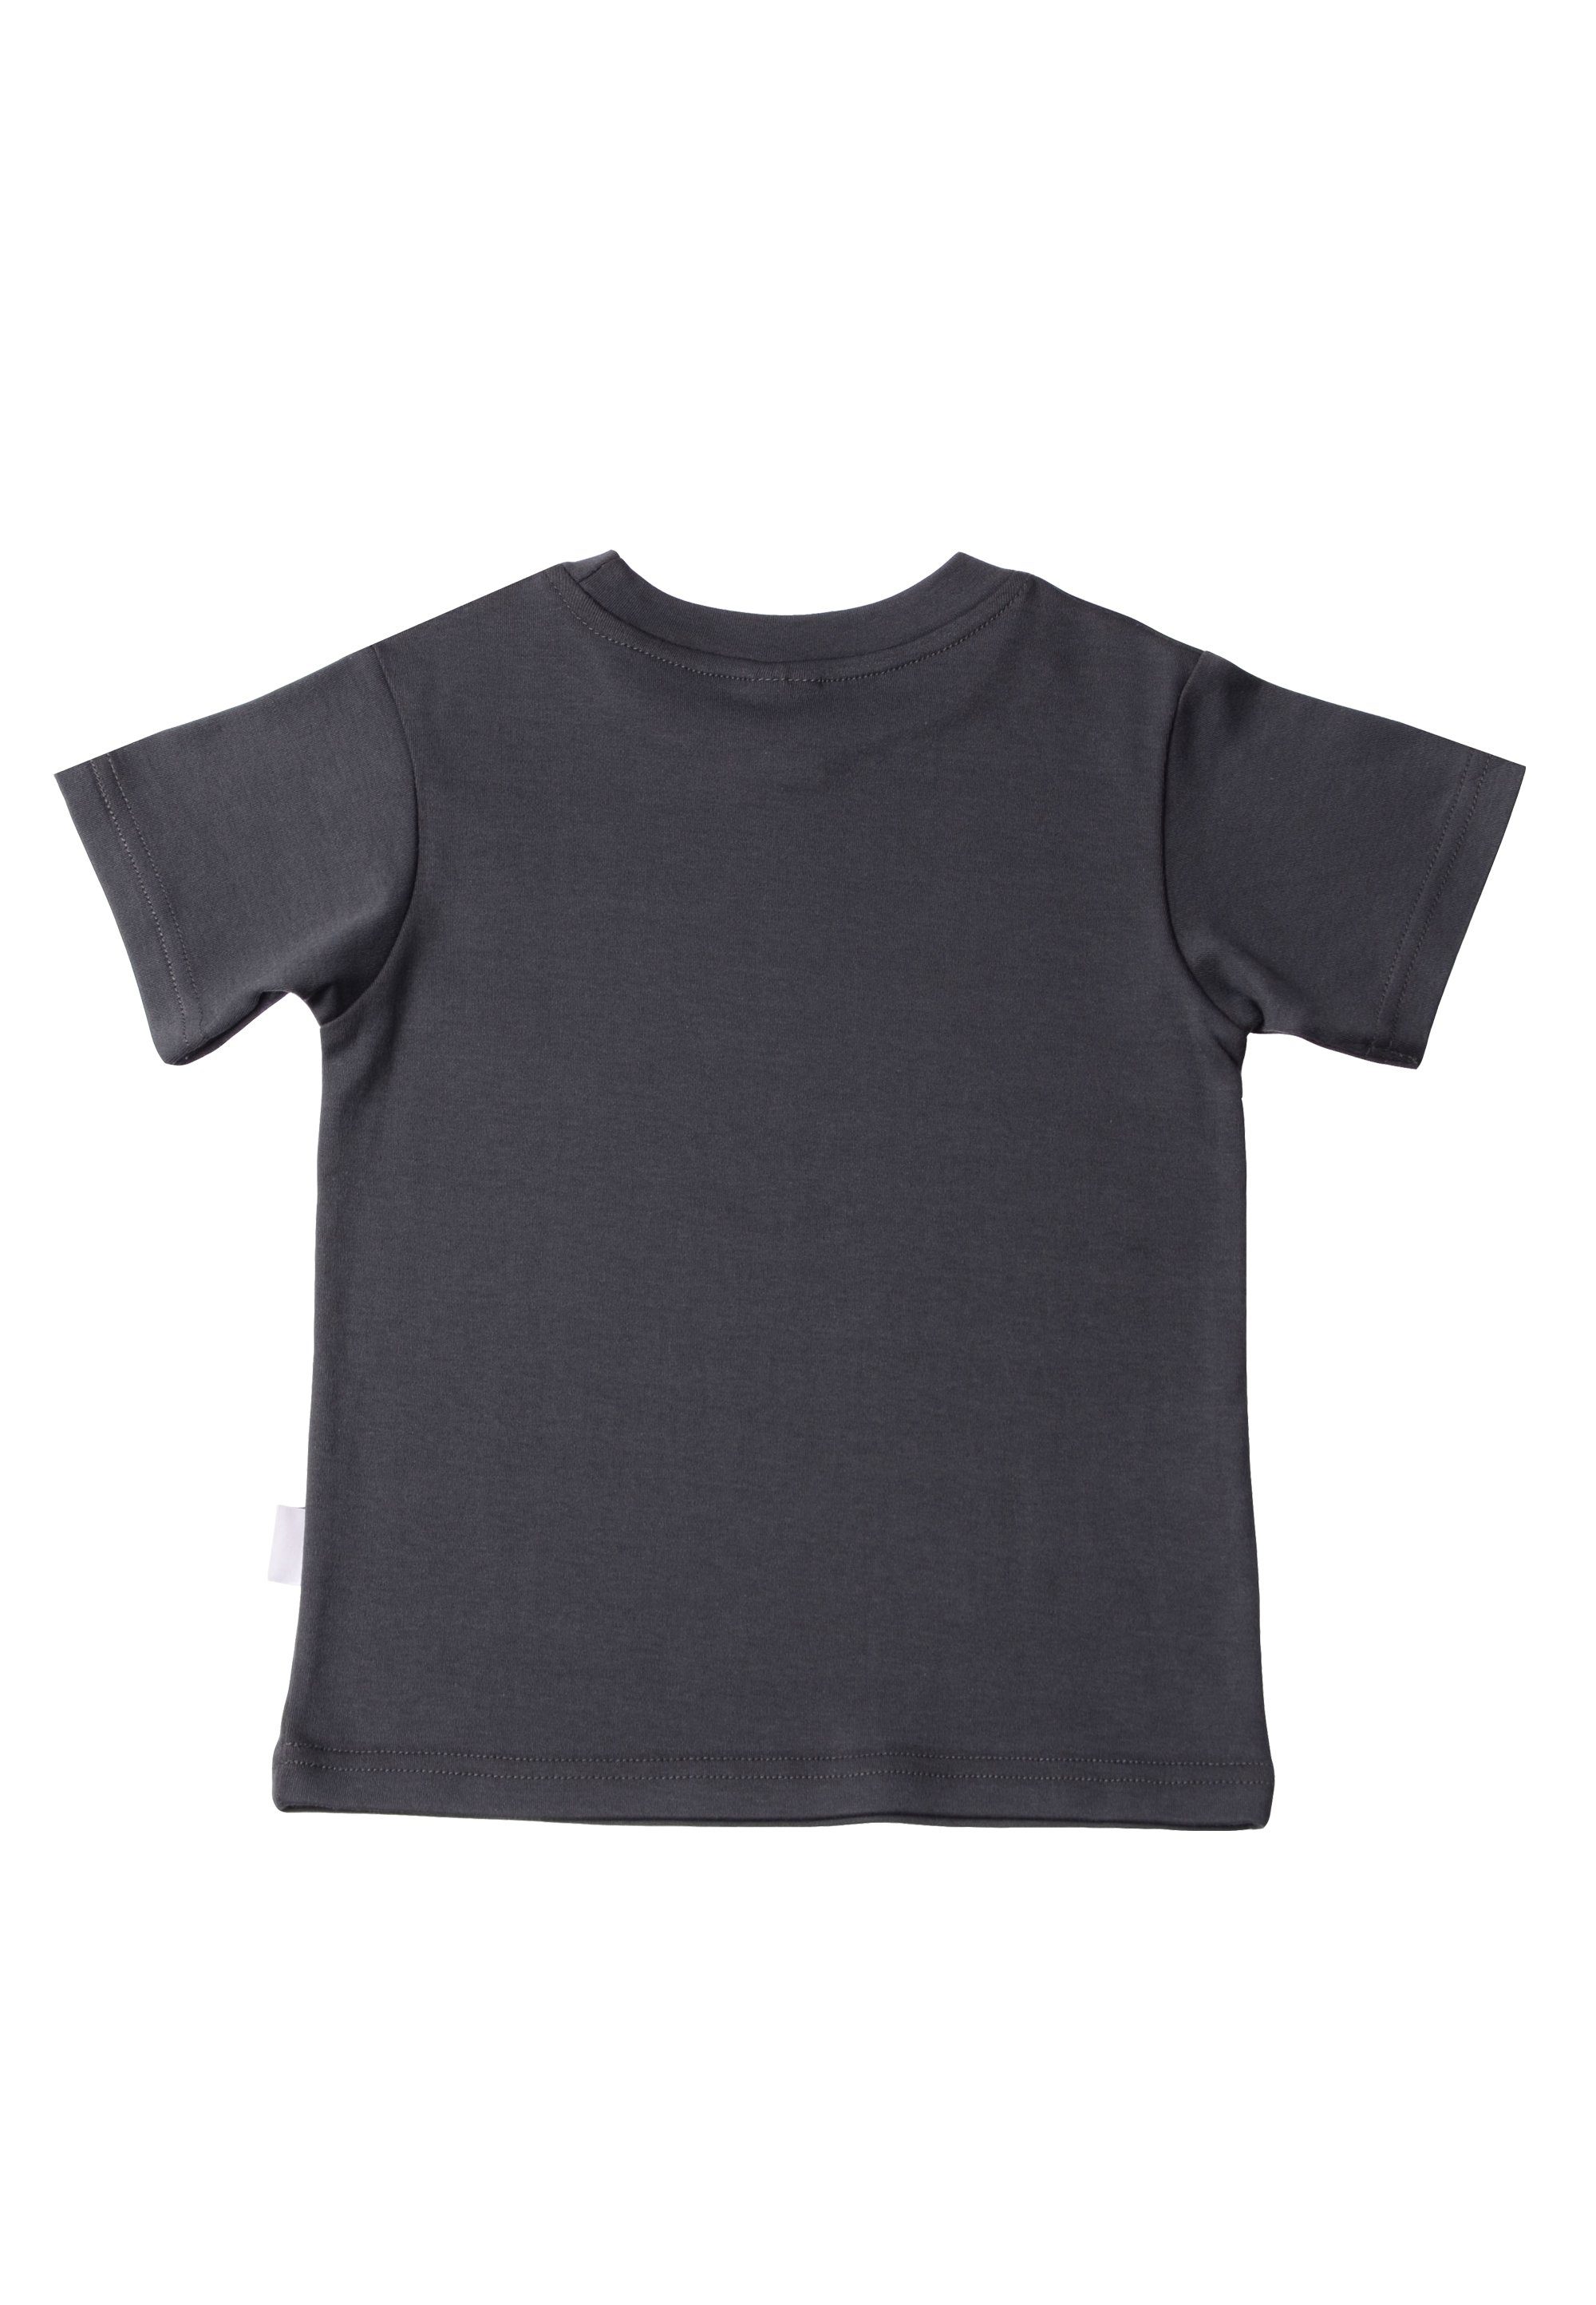 Liliput Roar Bio-Baumwolle aus T-Shirt hochwertiger